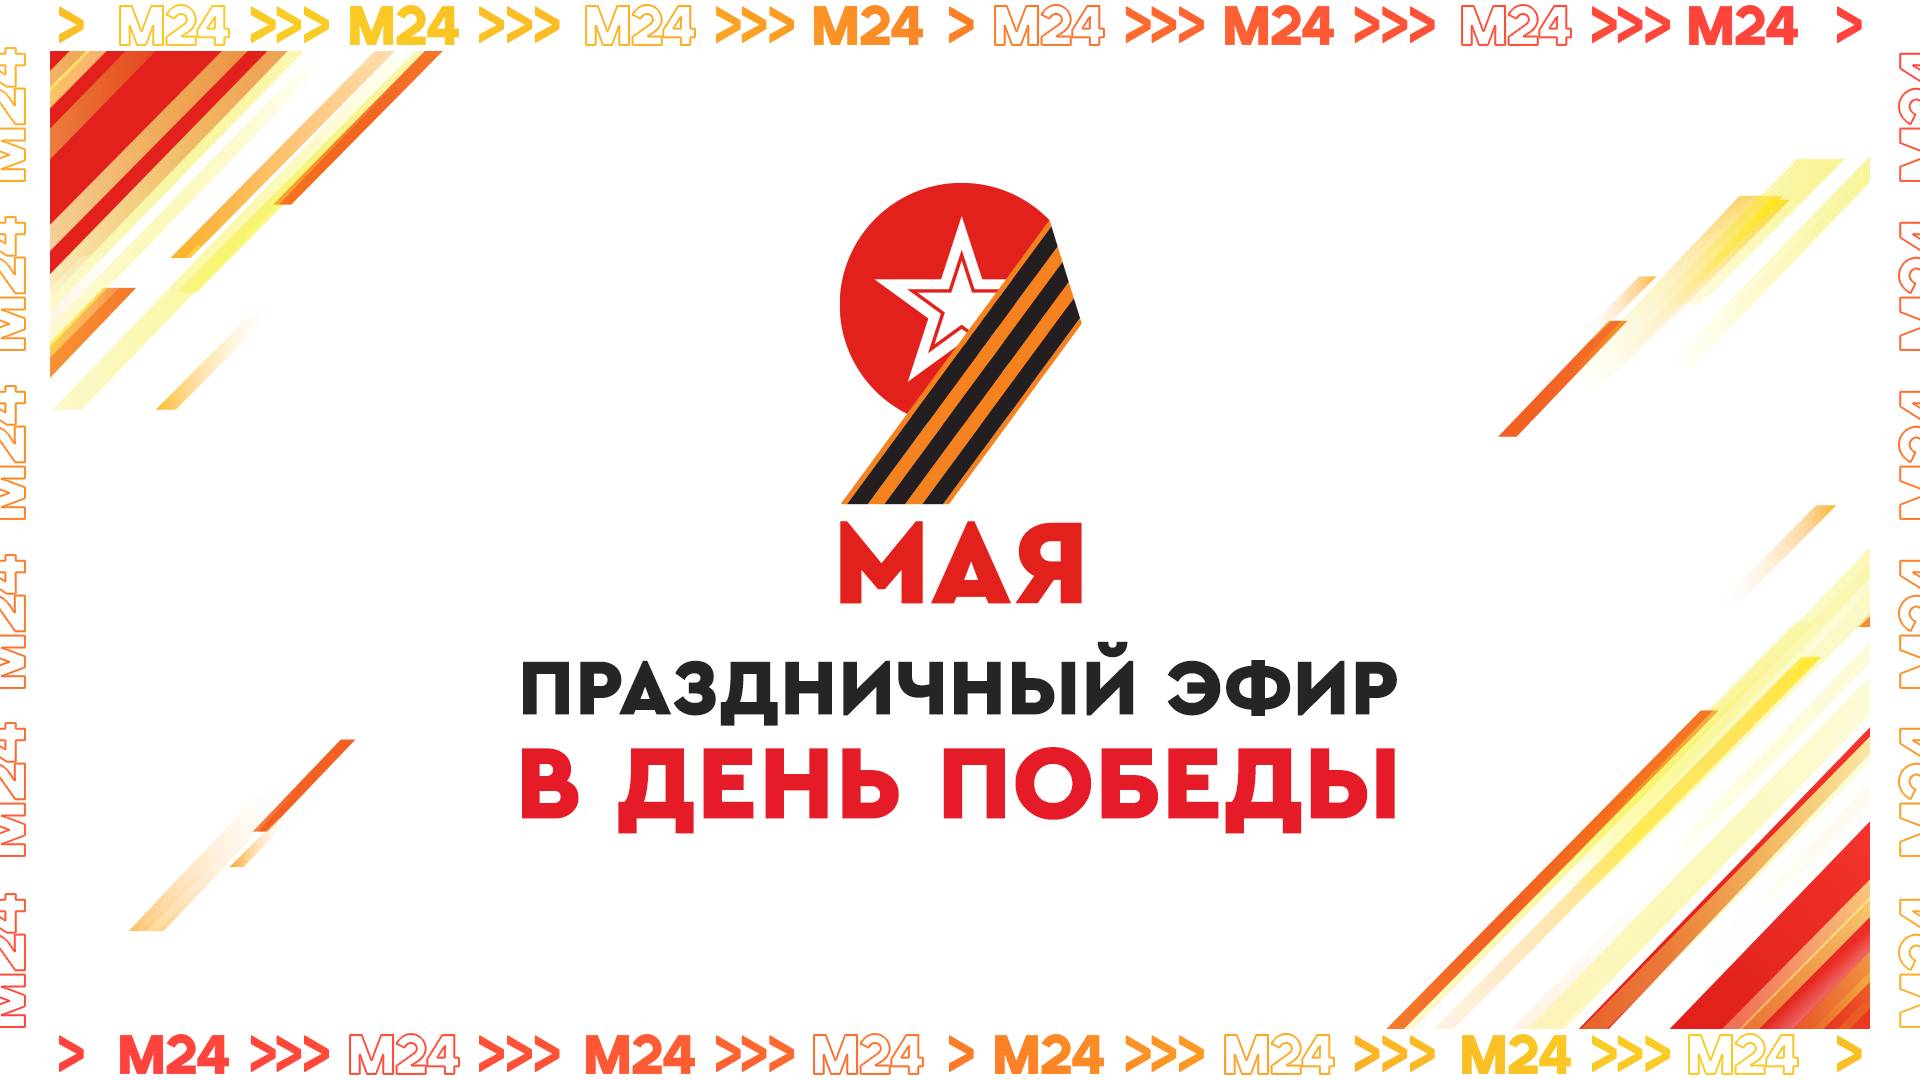 Праздничный эфир в День Победы — Москва 24